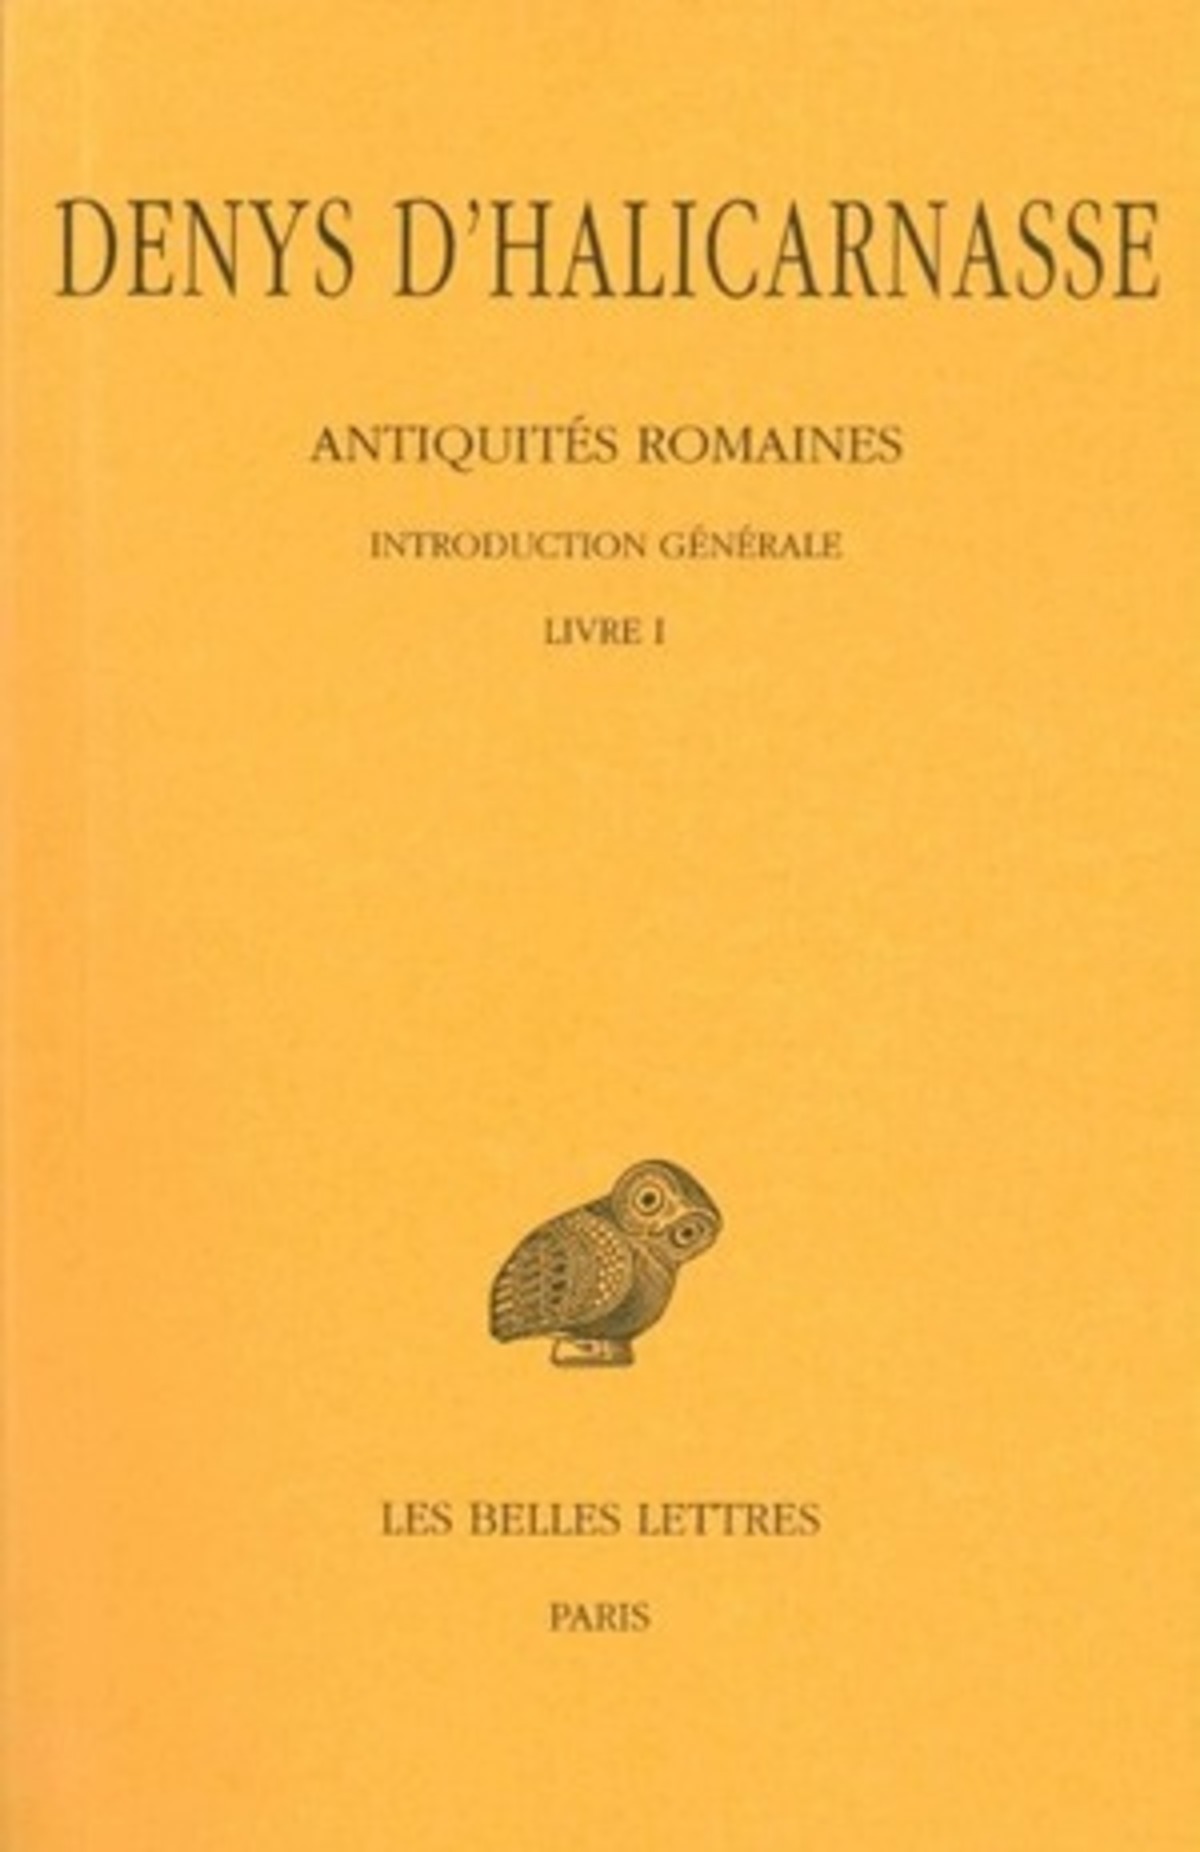 Antiquités romaines. Tome I : Introduction générale - Livre I